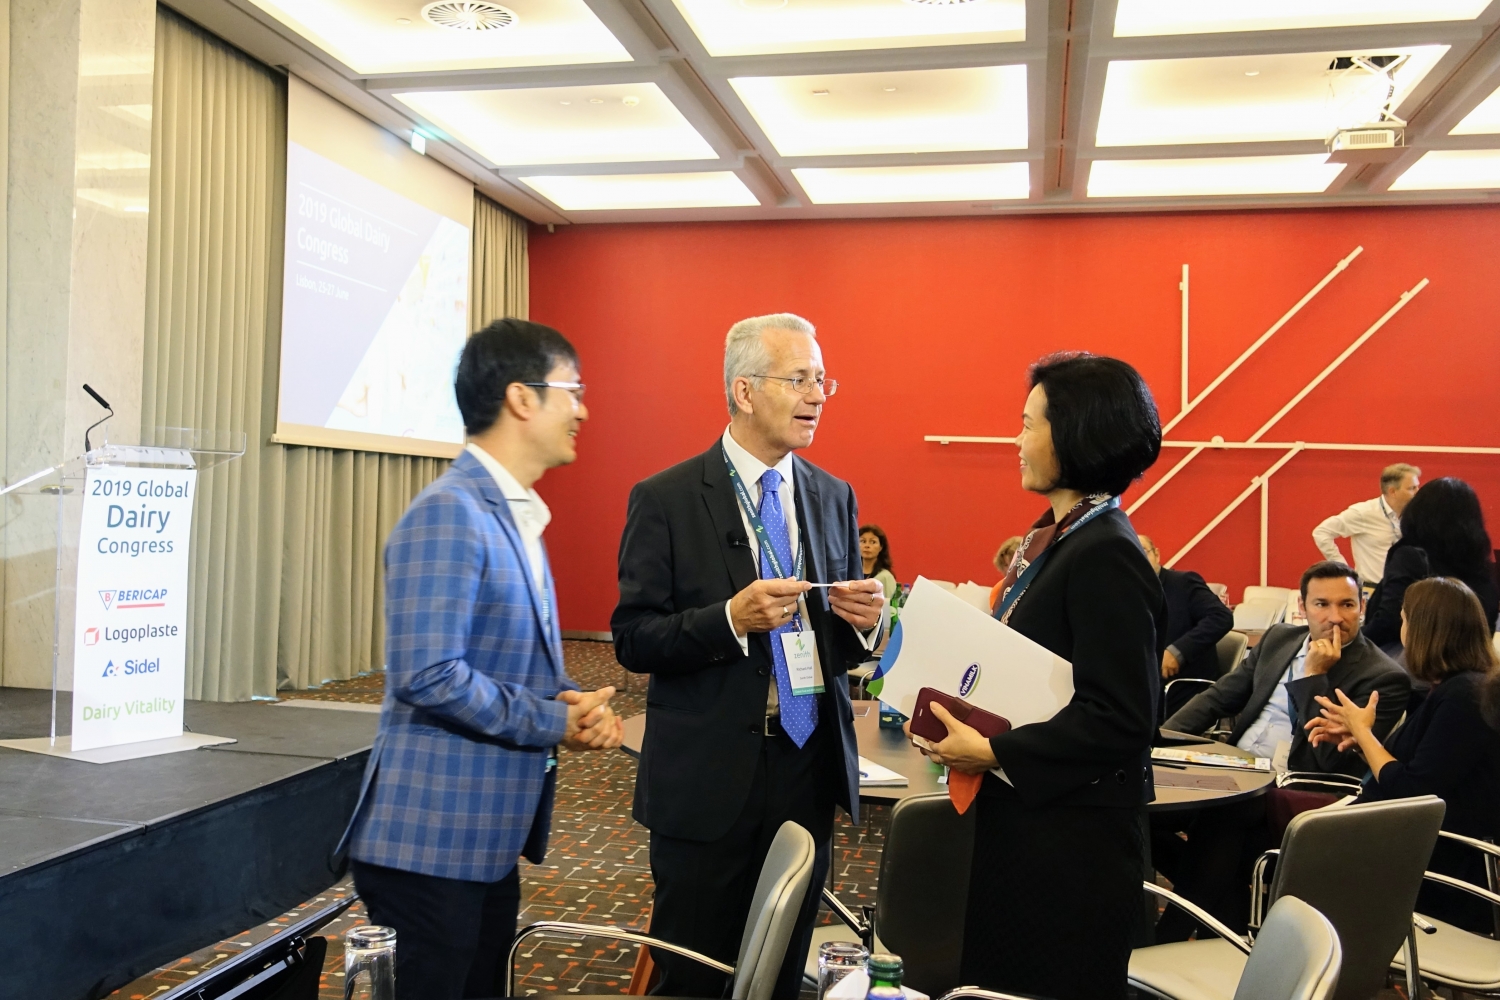 Vinamilk là đại diện duy nhất của của khu vực Châu Á trình bày về xu hướng Organic tại Hội nghị Sữa toàn cầu 2019 tại Bồ Đào Nha